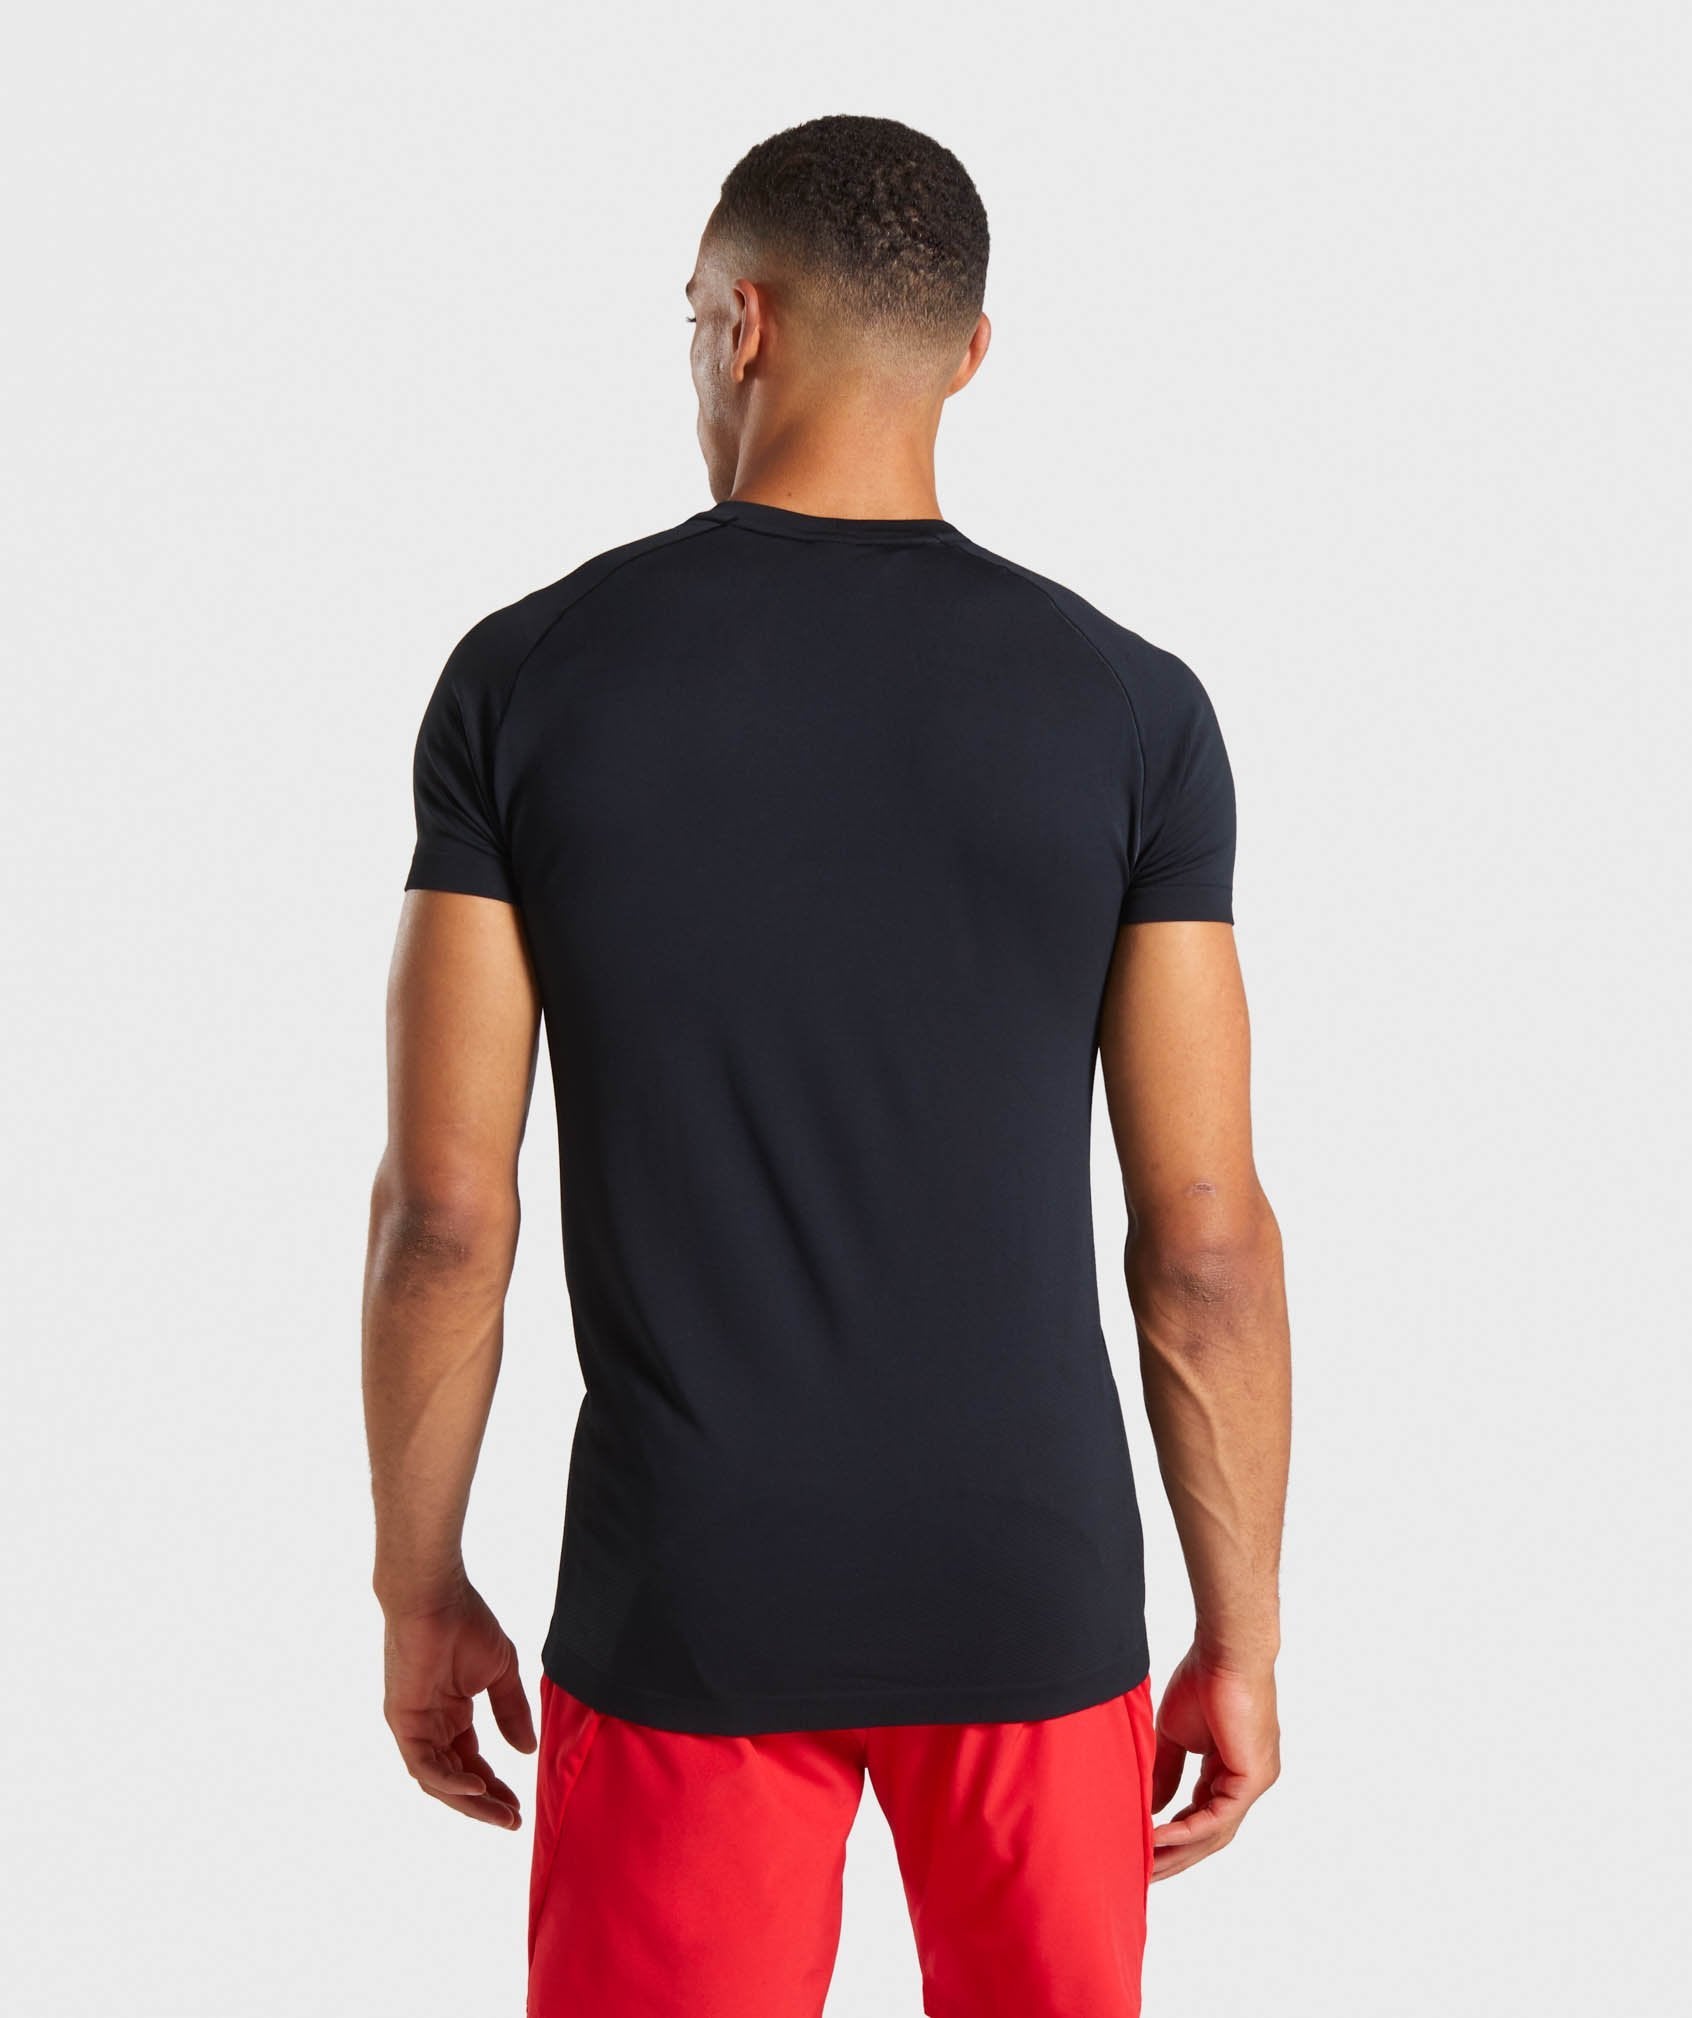 Lightweight Seamless T-Shirt in Black - view 2